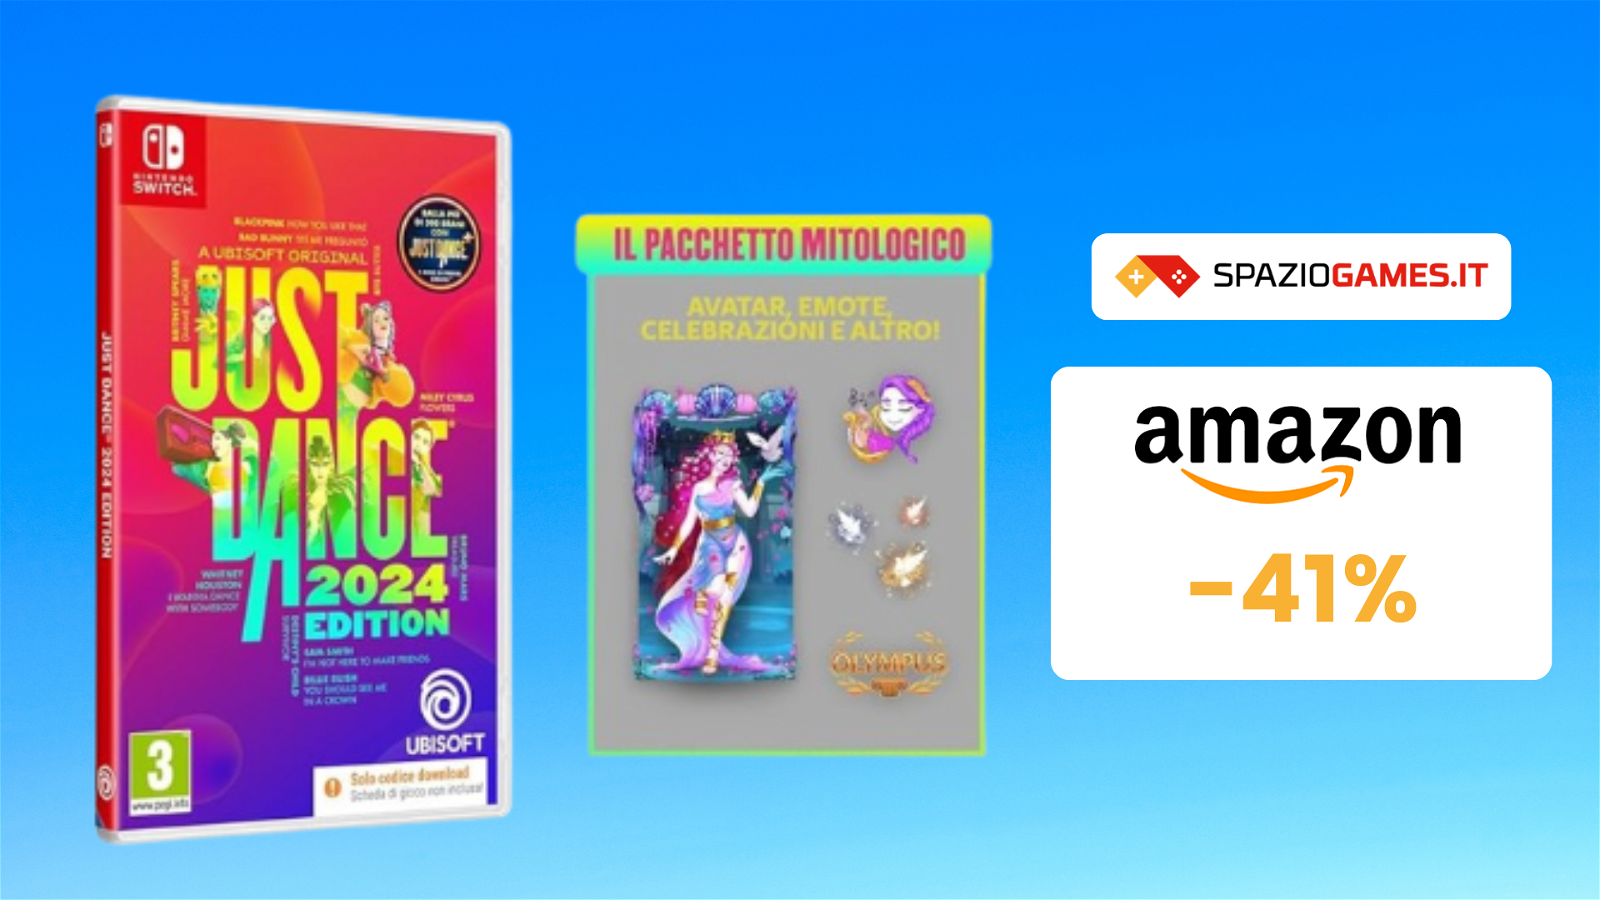 Bundle di Just Dance 2024 con pacchetto mitologico a 42€!